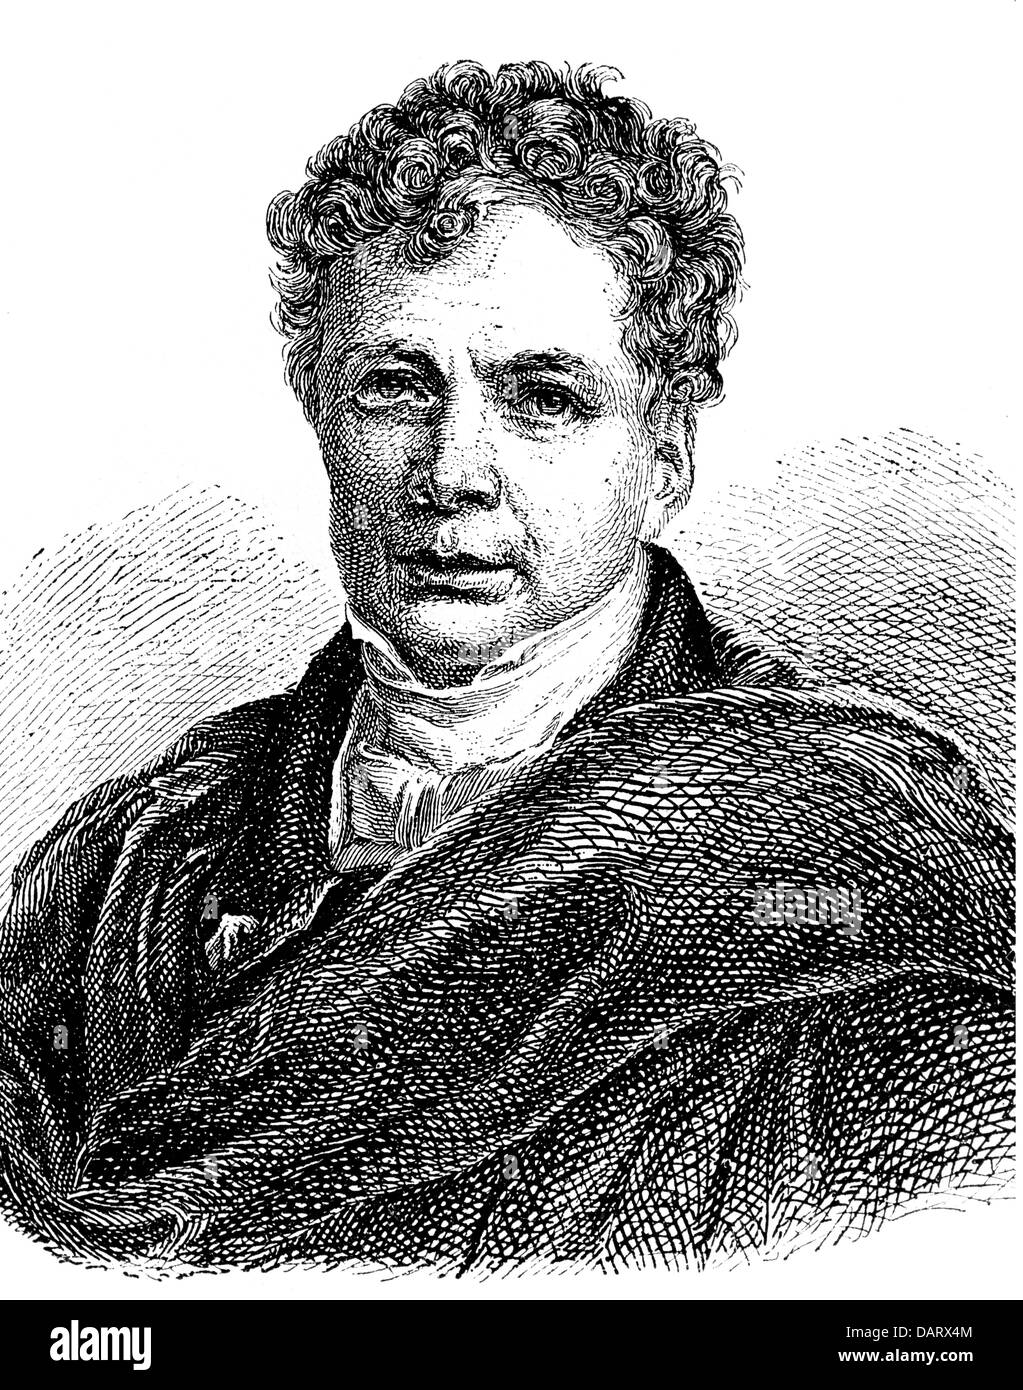 Schelling, Friedrich Wilhelm von, 27.1.1775 - 20.8.1854, German philosopher, portrait, wood engraving, 19th century, Stock Photo